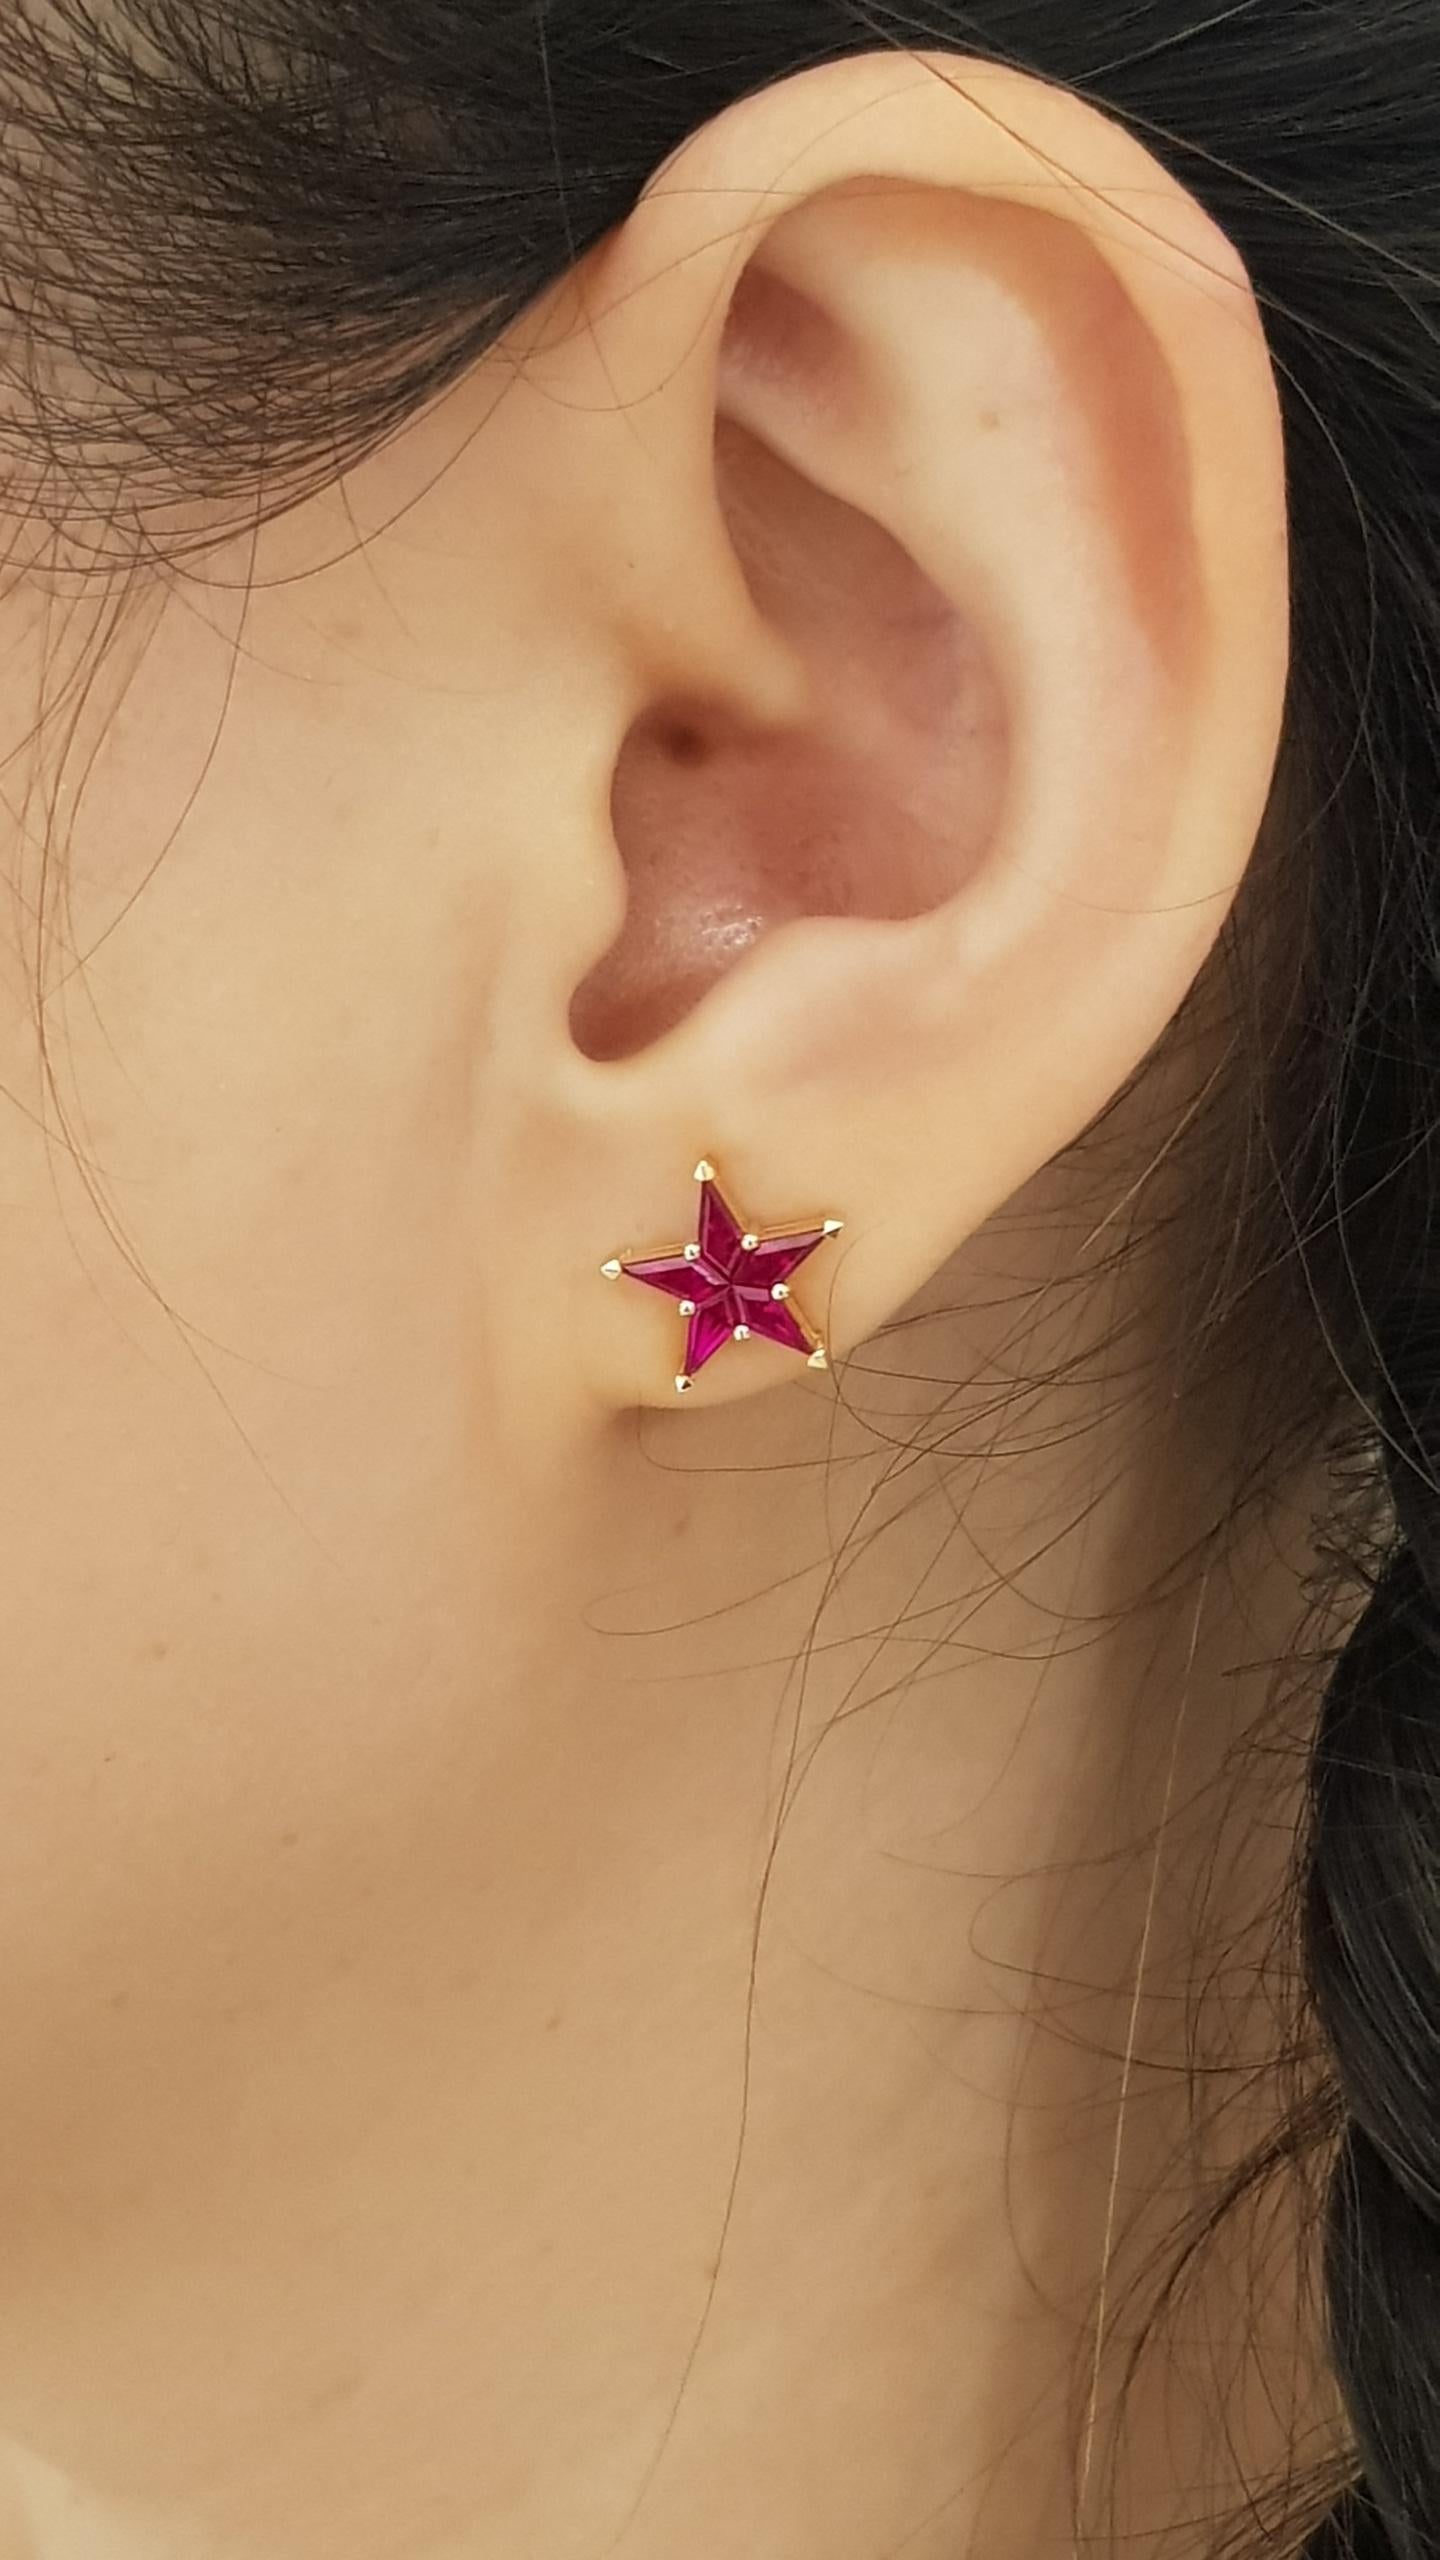 gucci star earrings